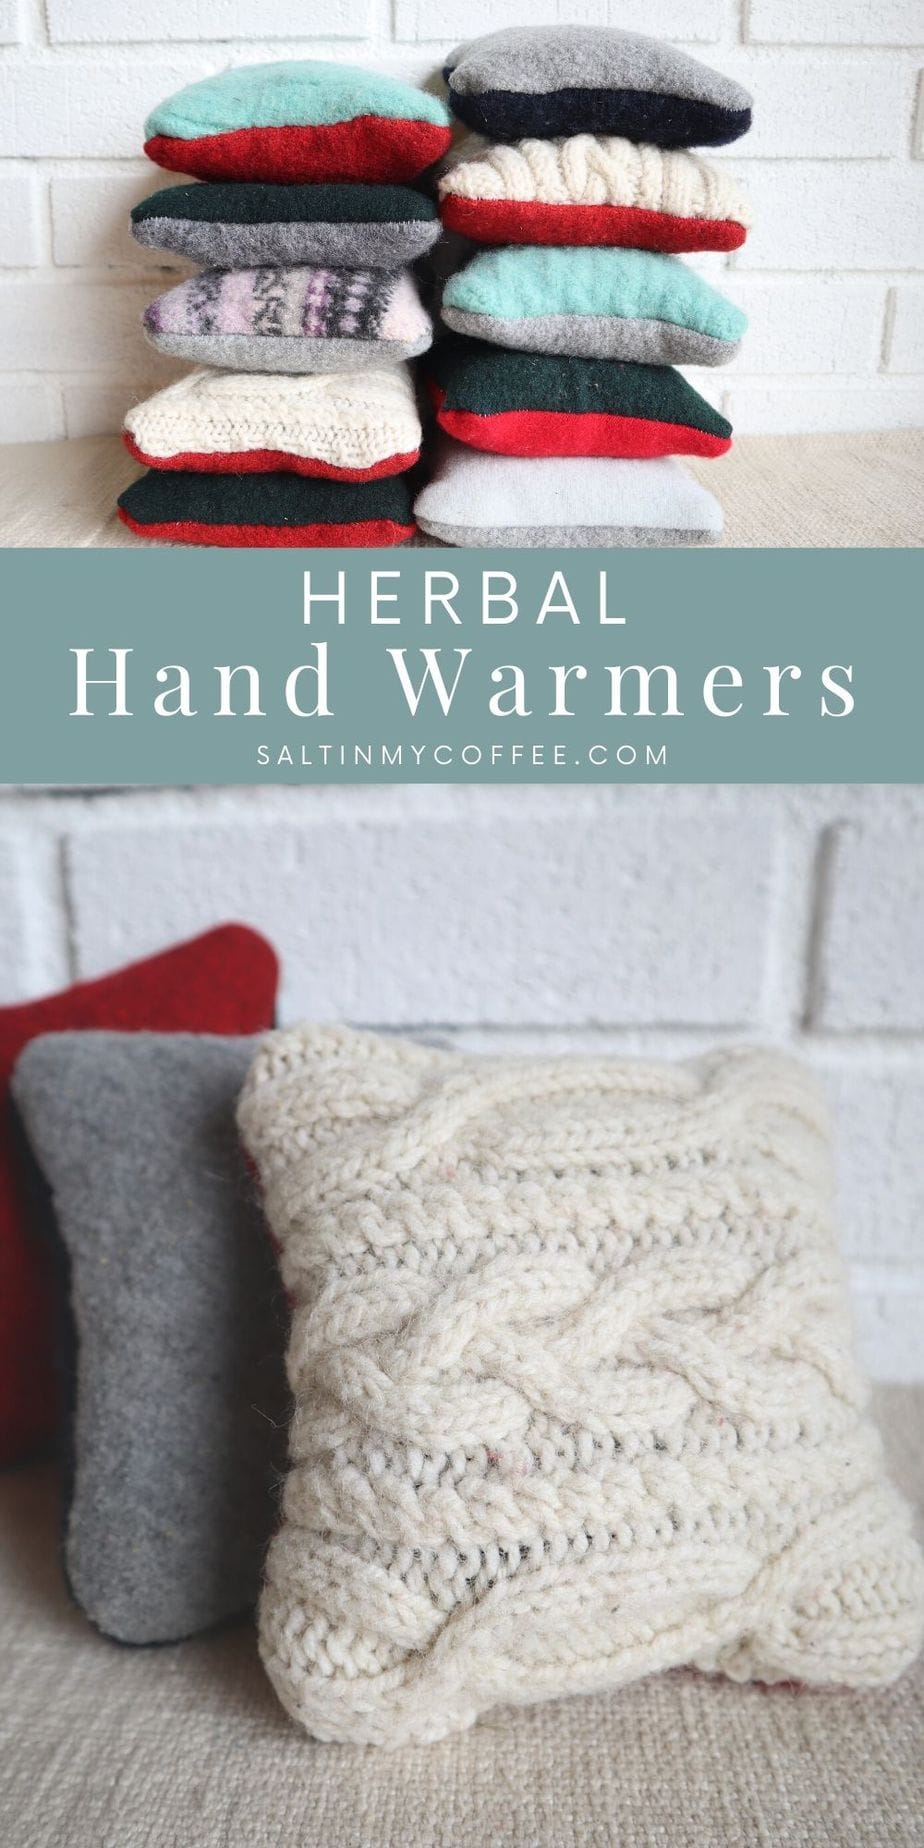 Handmade Herbal Heating Packs - Salt in my Coffee